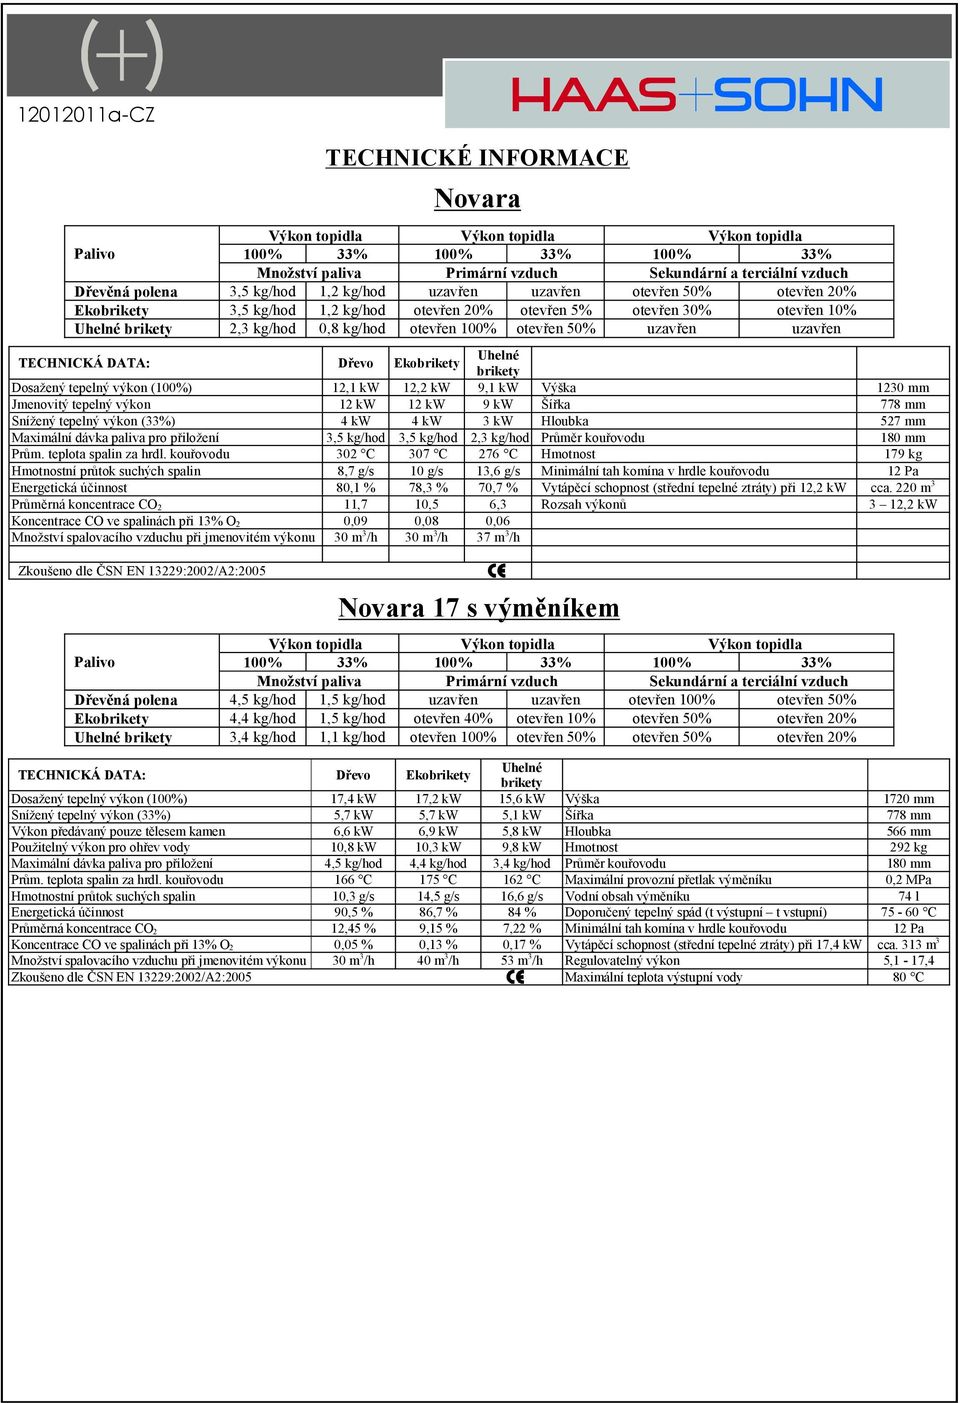 TECHNICKÁ DATA: Dřevo Ekobrikety Uhelné brikety Dosažený tepelný výkon (100%) 12,1 kw 12,2 kw 9,1 kw Výška 1230 mm Jmenovitý tepelný výkon 12 kw 12 kw 9 kw Šířka 778 mm Snížený tepelný výkon (33%) 4